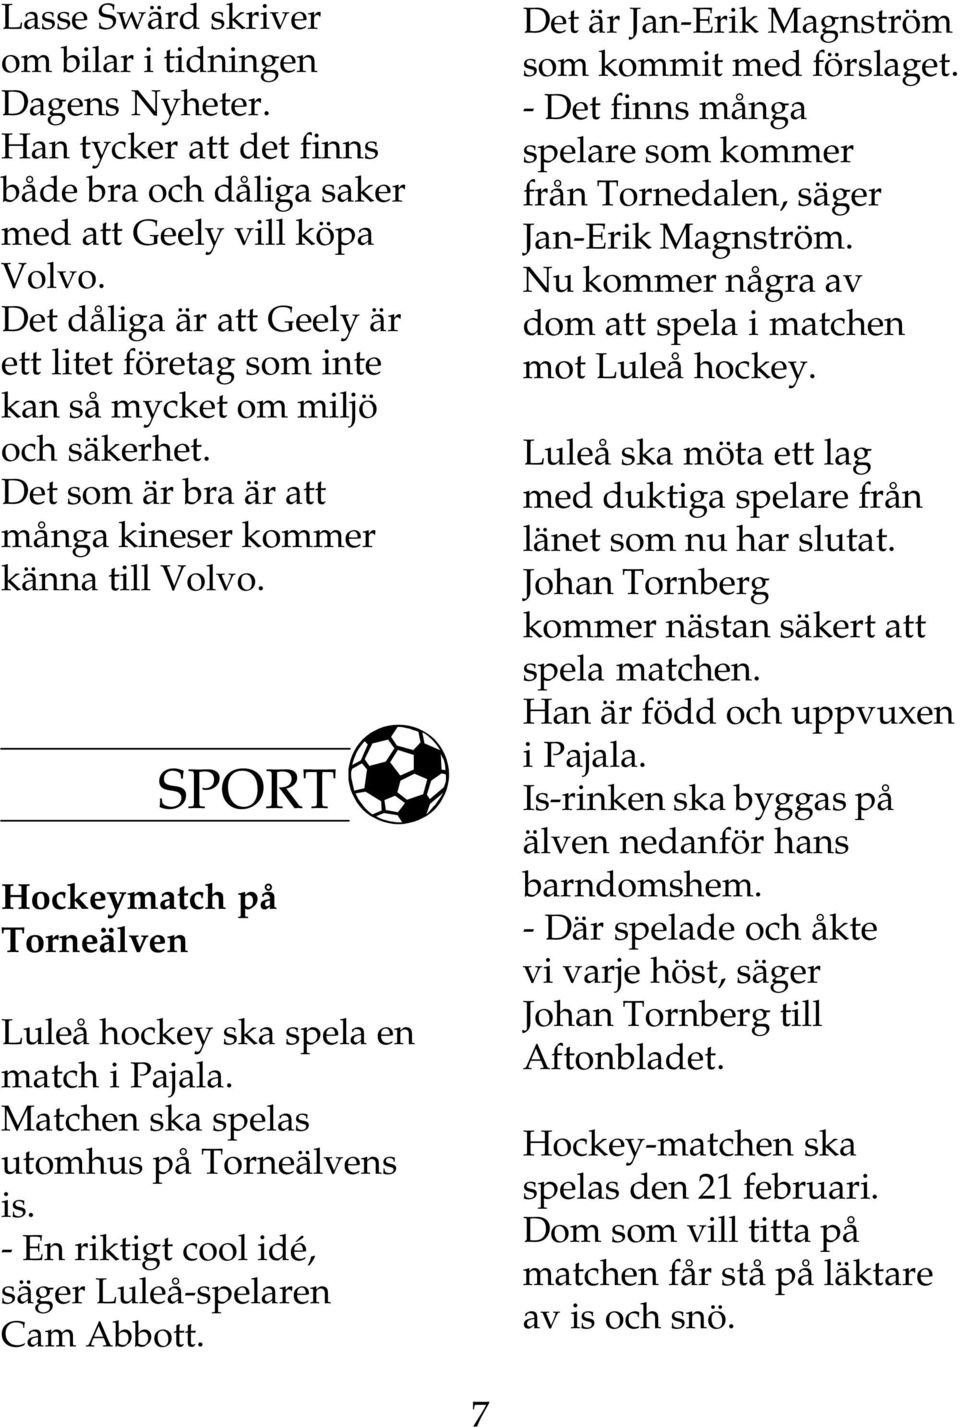 SPORT Hockeymatch på Torneälven Luleå hockey ska spela en match i Pajala. Matchen ska spelas utomhus på Torneälvens is. - En riktigt cool idé, säger Luleå-spelaren Cam Abbott.